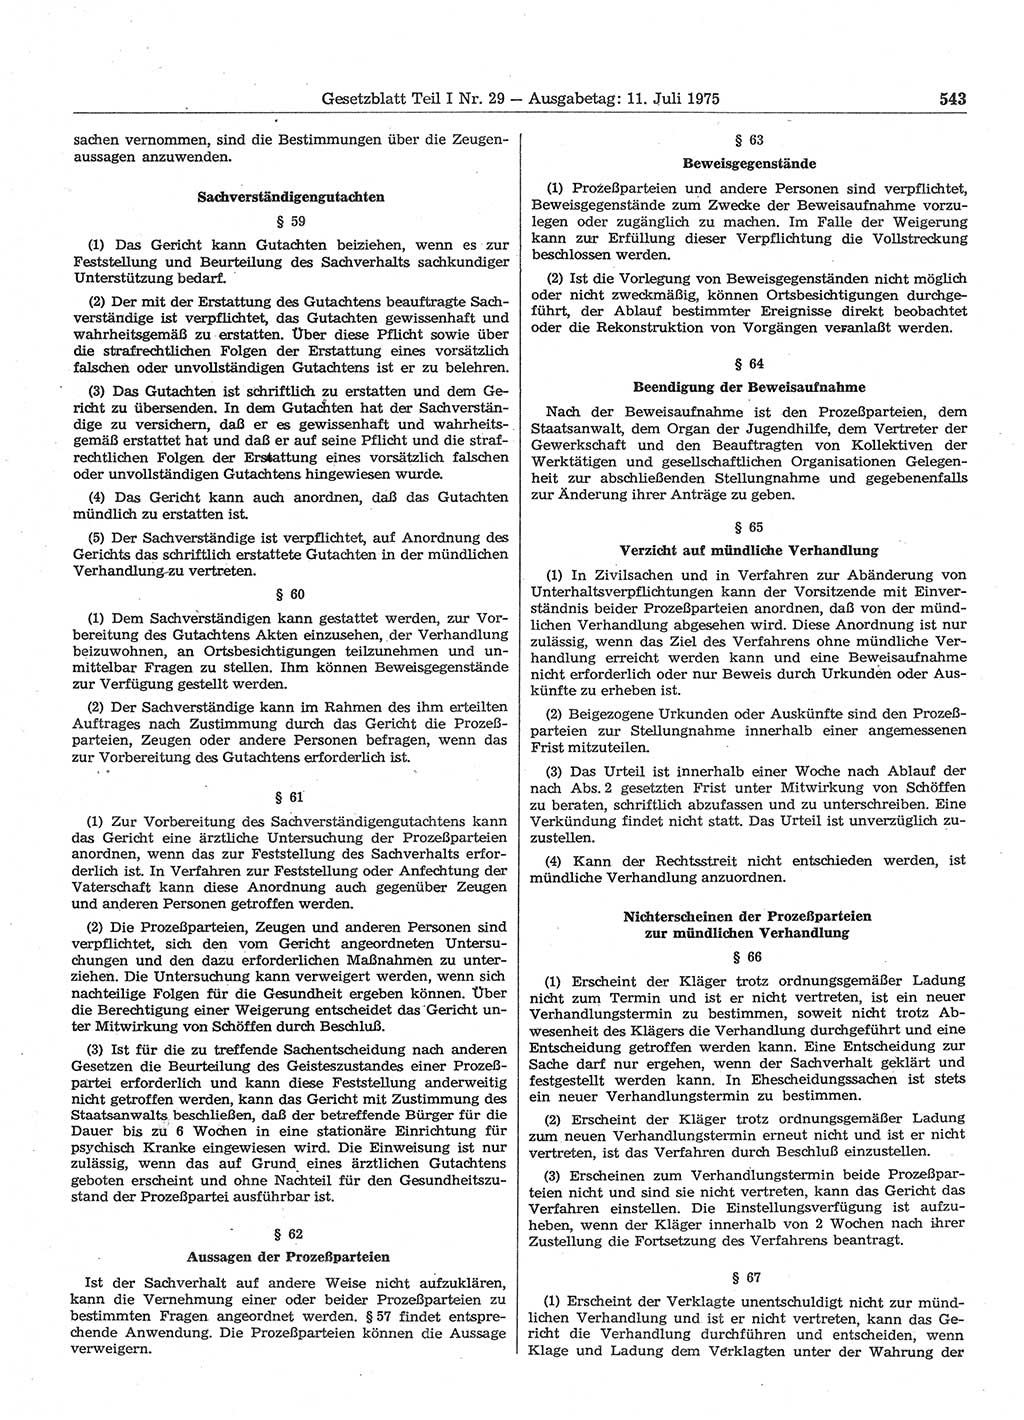 Gesetzblatt (GBl.) der Deutschen Demokratischen Republik (DDR) Teil Ⅰ 1975, Seite 543 (GBl. DDR Ⅰ 1975, S. 543)